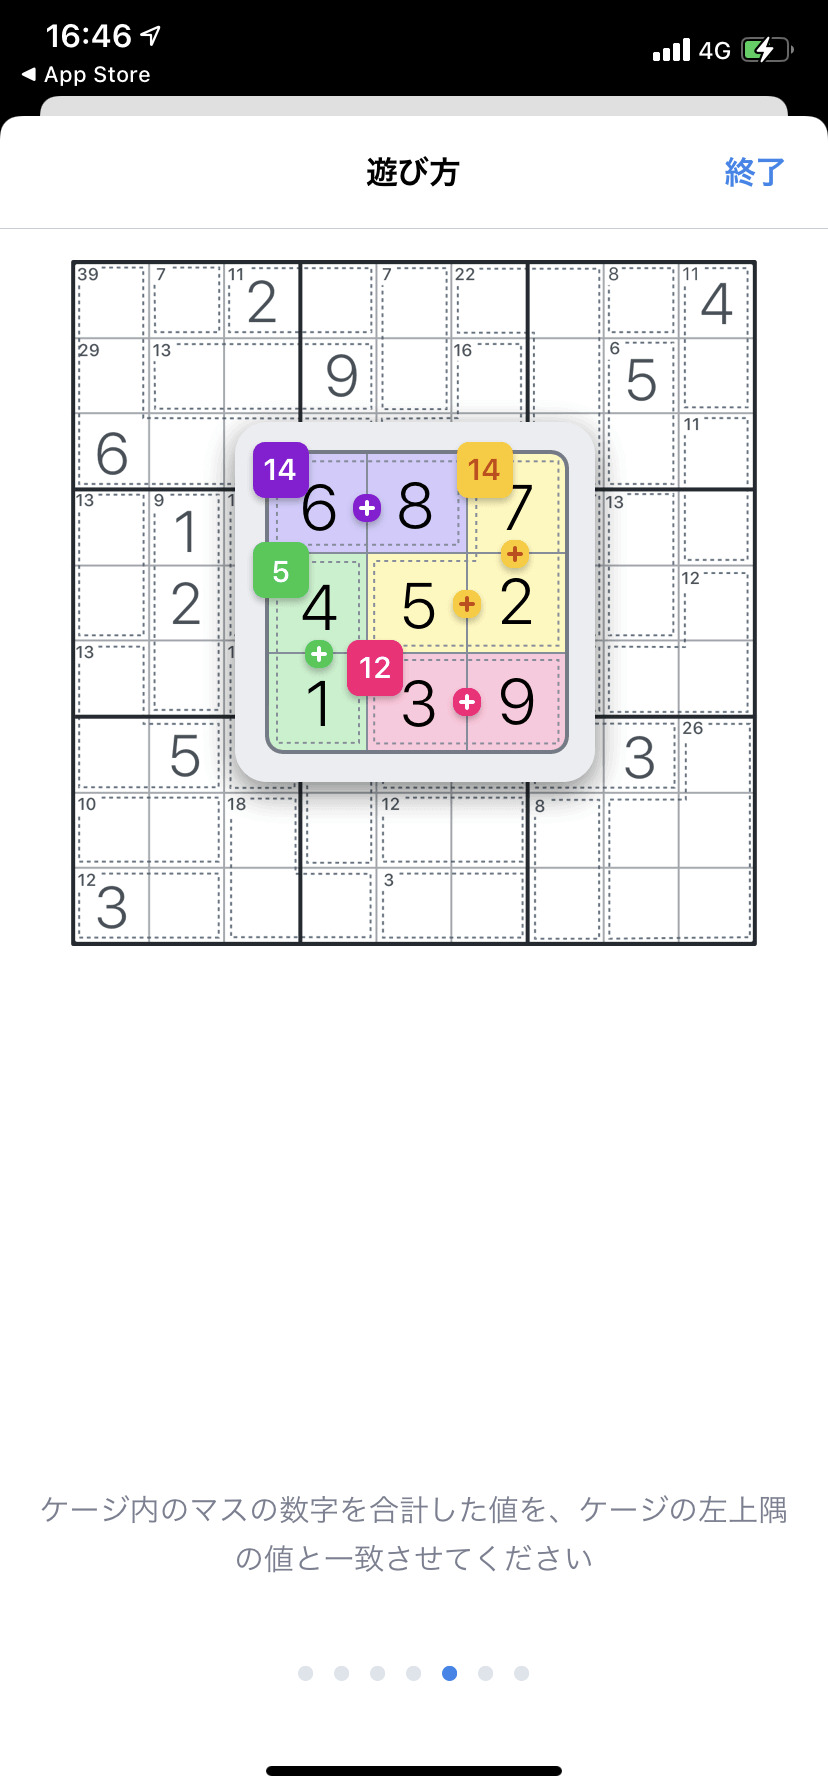 キラーナンプレ Sudoku.comのチュートリアル画像